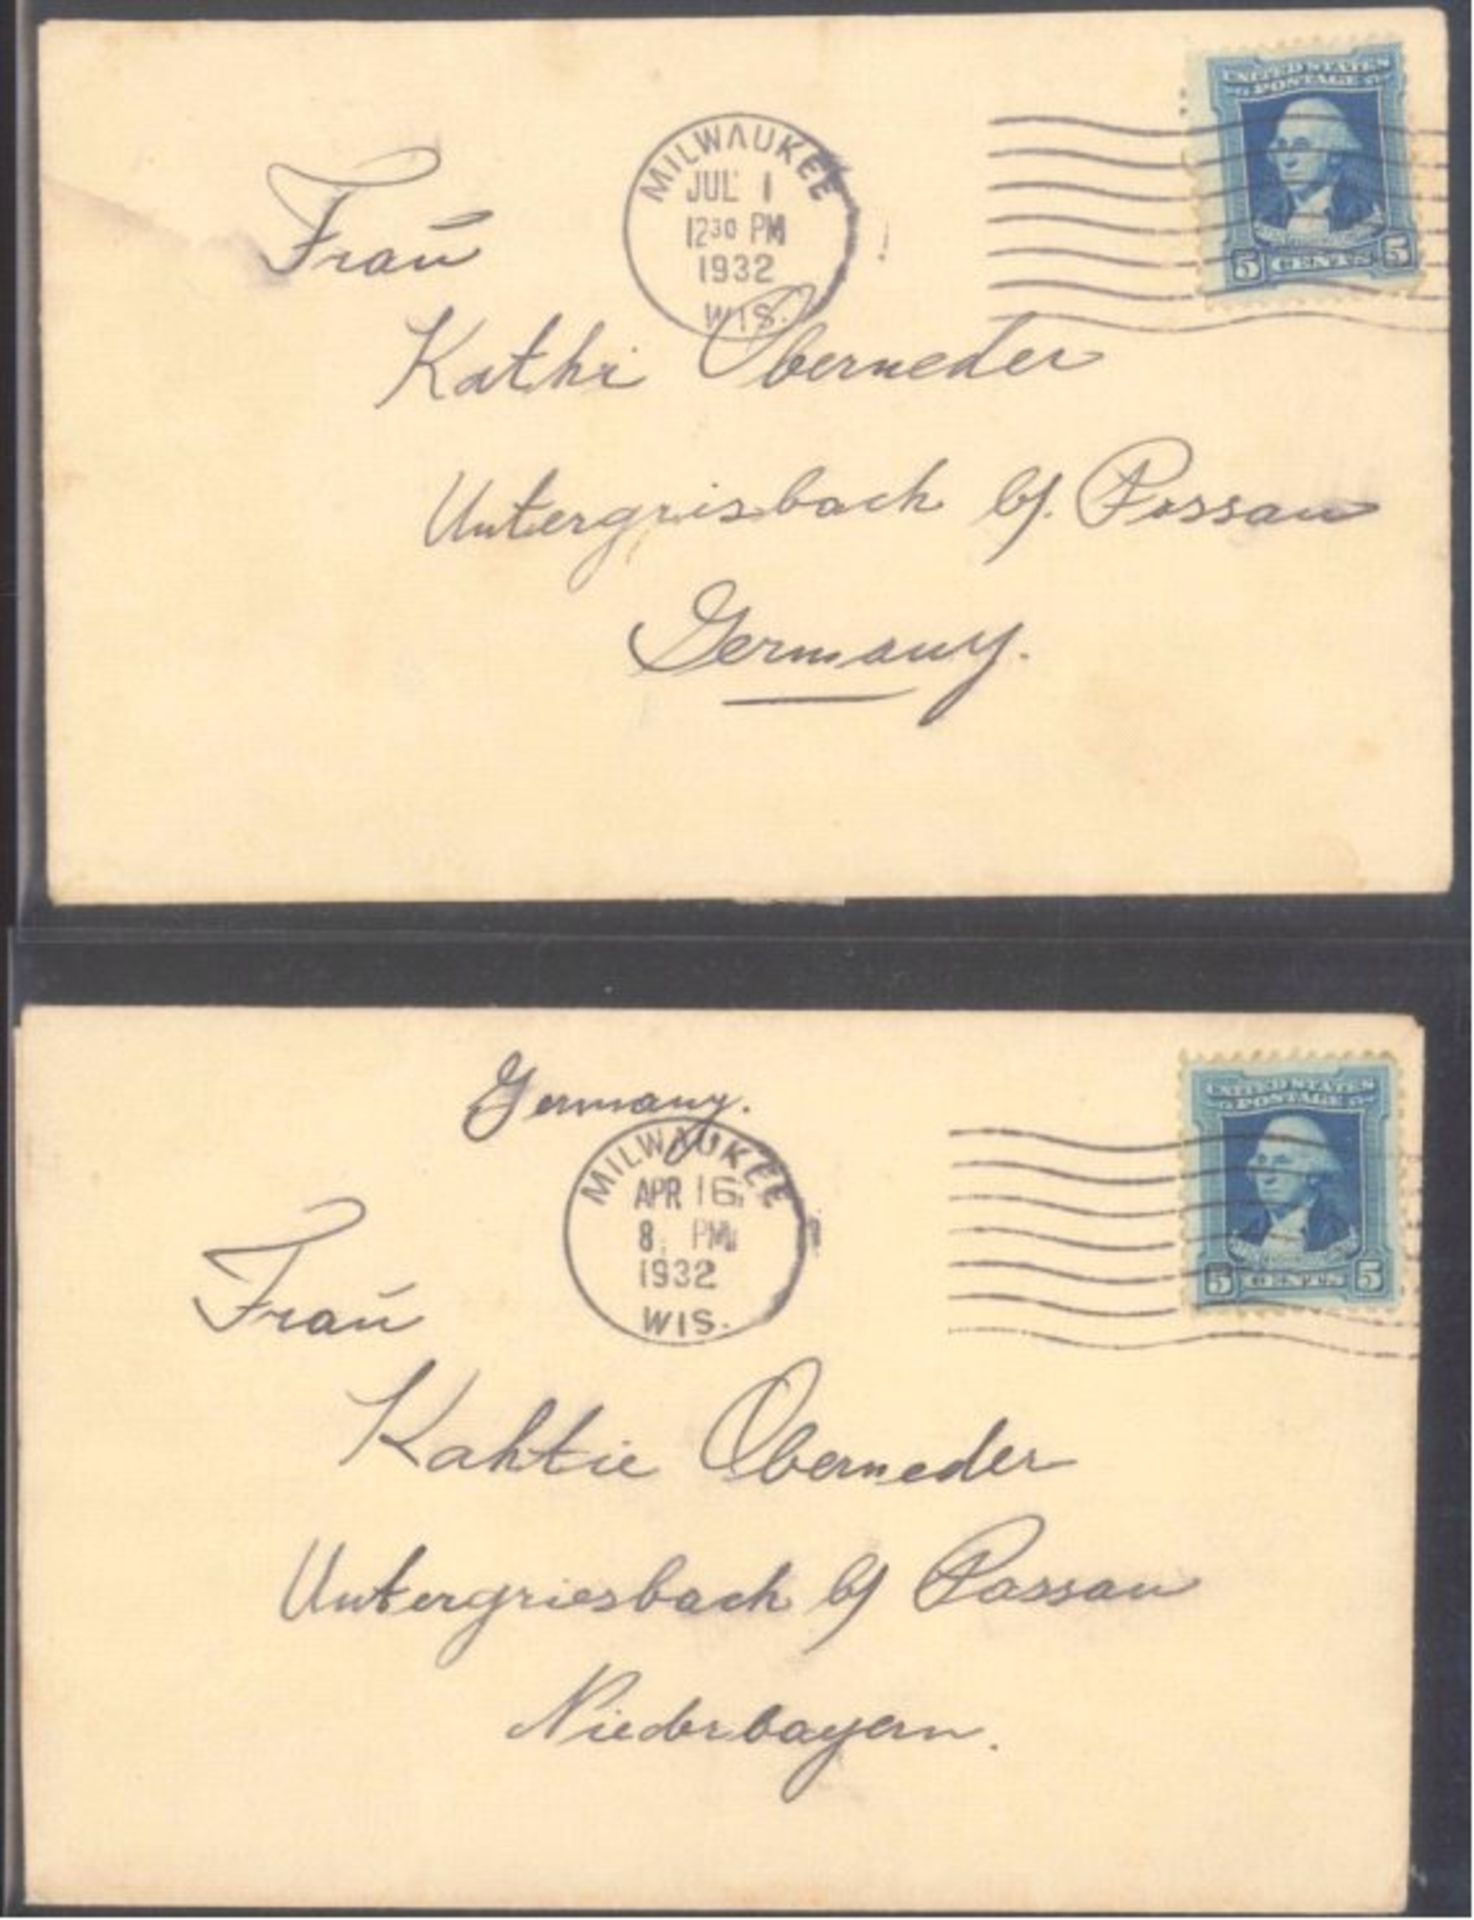 HEIMAT: UNTERGRIESBACH bei PASSAU, auch MOTIV DCHTER2 Briefe 1932 von USA MILWAUKEE nach oben